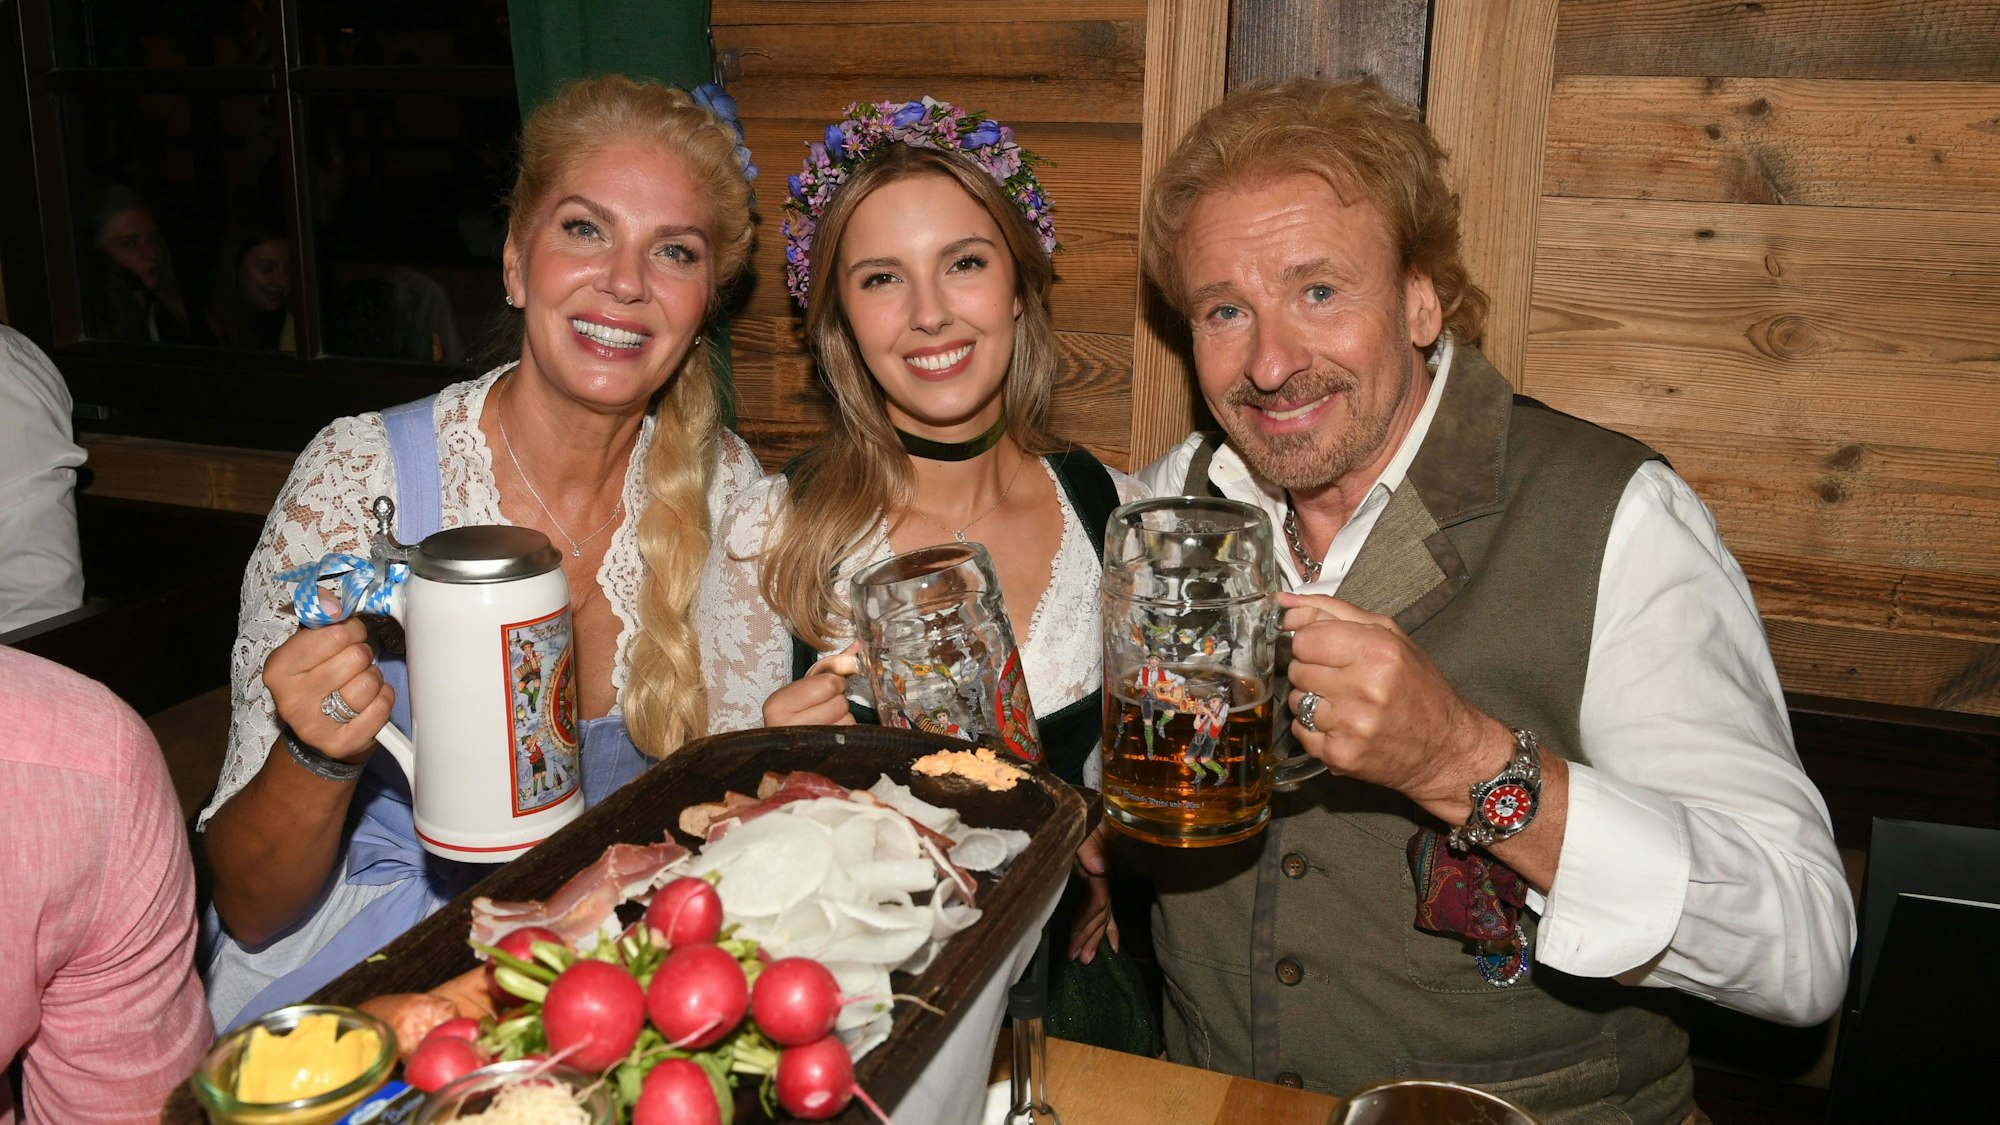 Auf dem Bild sitzen Karina Mroß, Melinda Mroß und Thomas Gottschalk vor einer Brotzeit-Platte. Alle drei posieren mit Bierkrug in der Hand und lächeln in die Kamera.